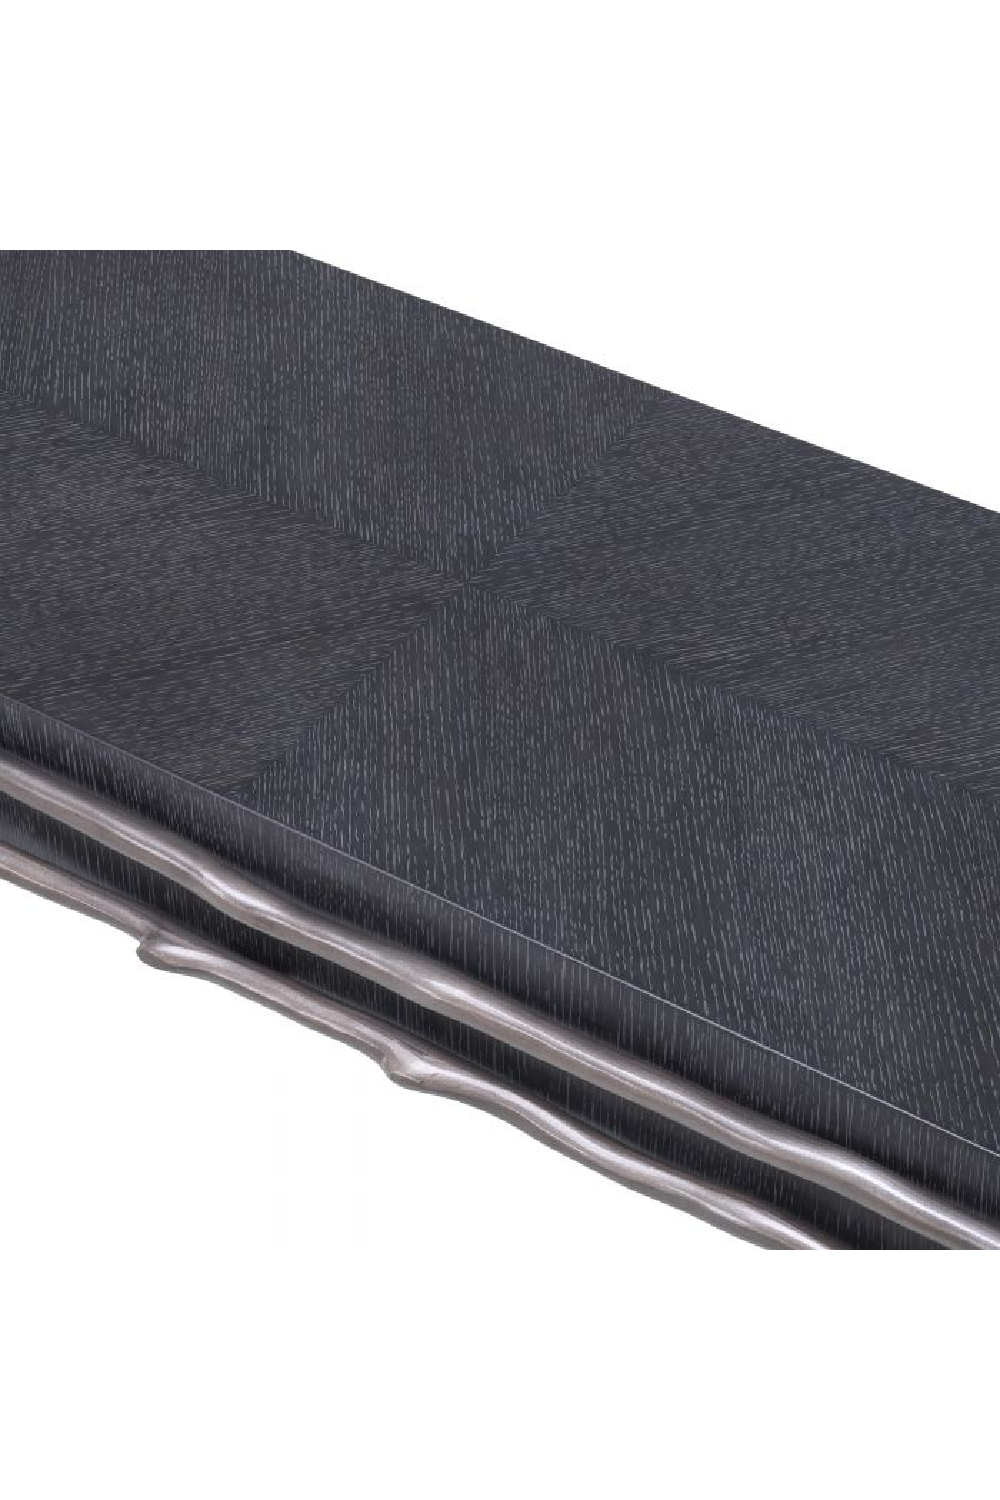 Charcoal Gray Oak Console Table | Eichholtz Premier | OROA